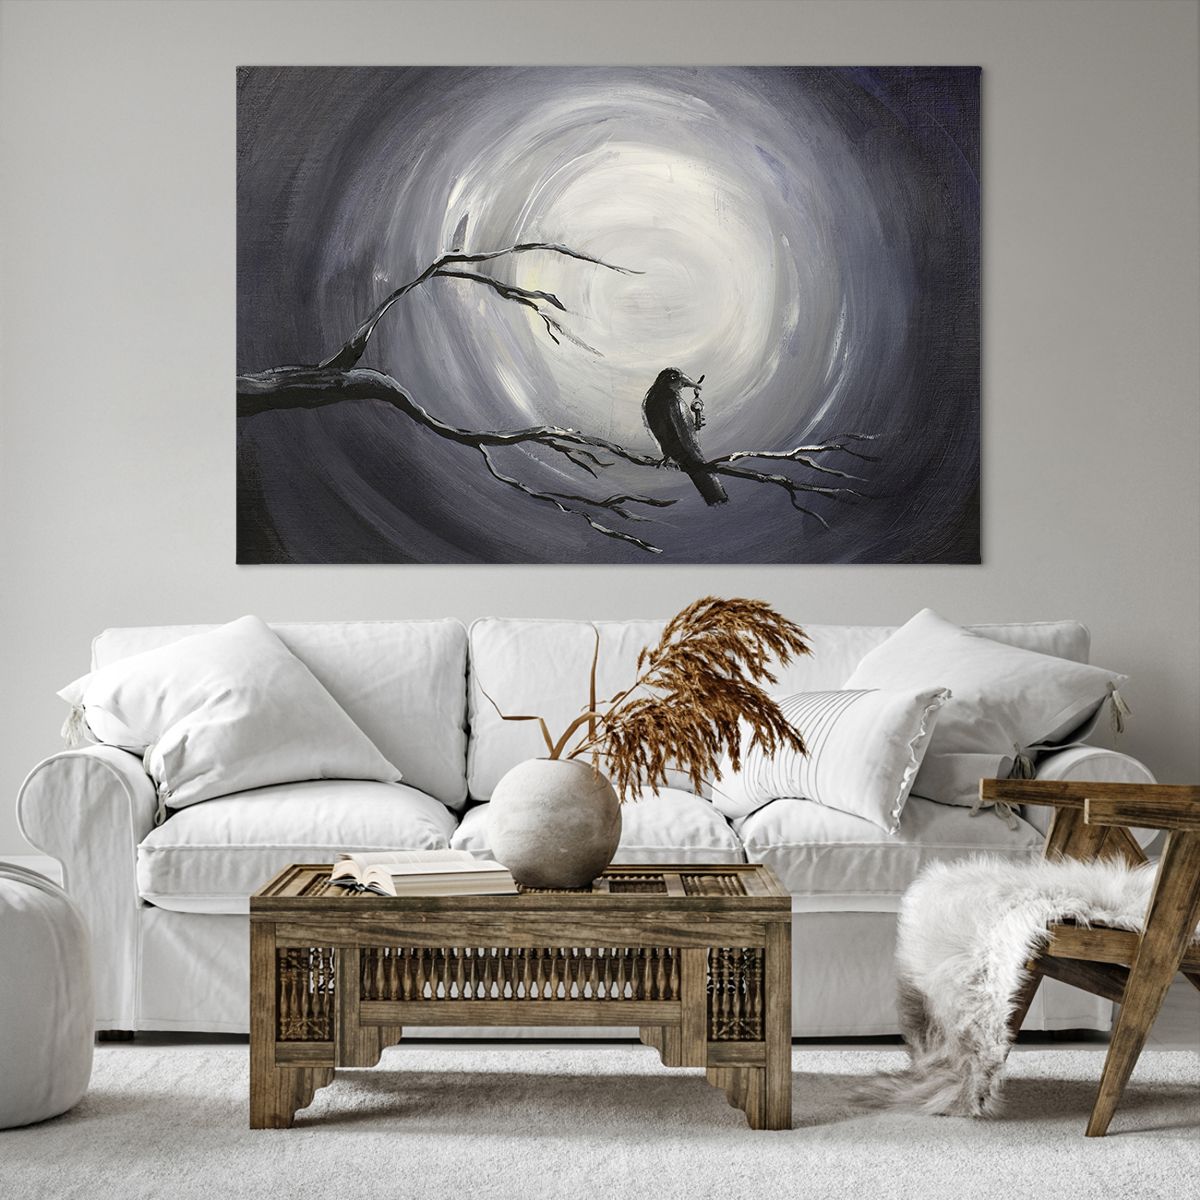 Bild auf Leinwand Abstraktion, Bild auf Leinwand Krähe, Bild auf Leinwand Vogel, Bild auf Leinwand Mond, Bild auf Leinwand Schwarz Und Weiß